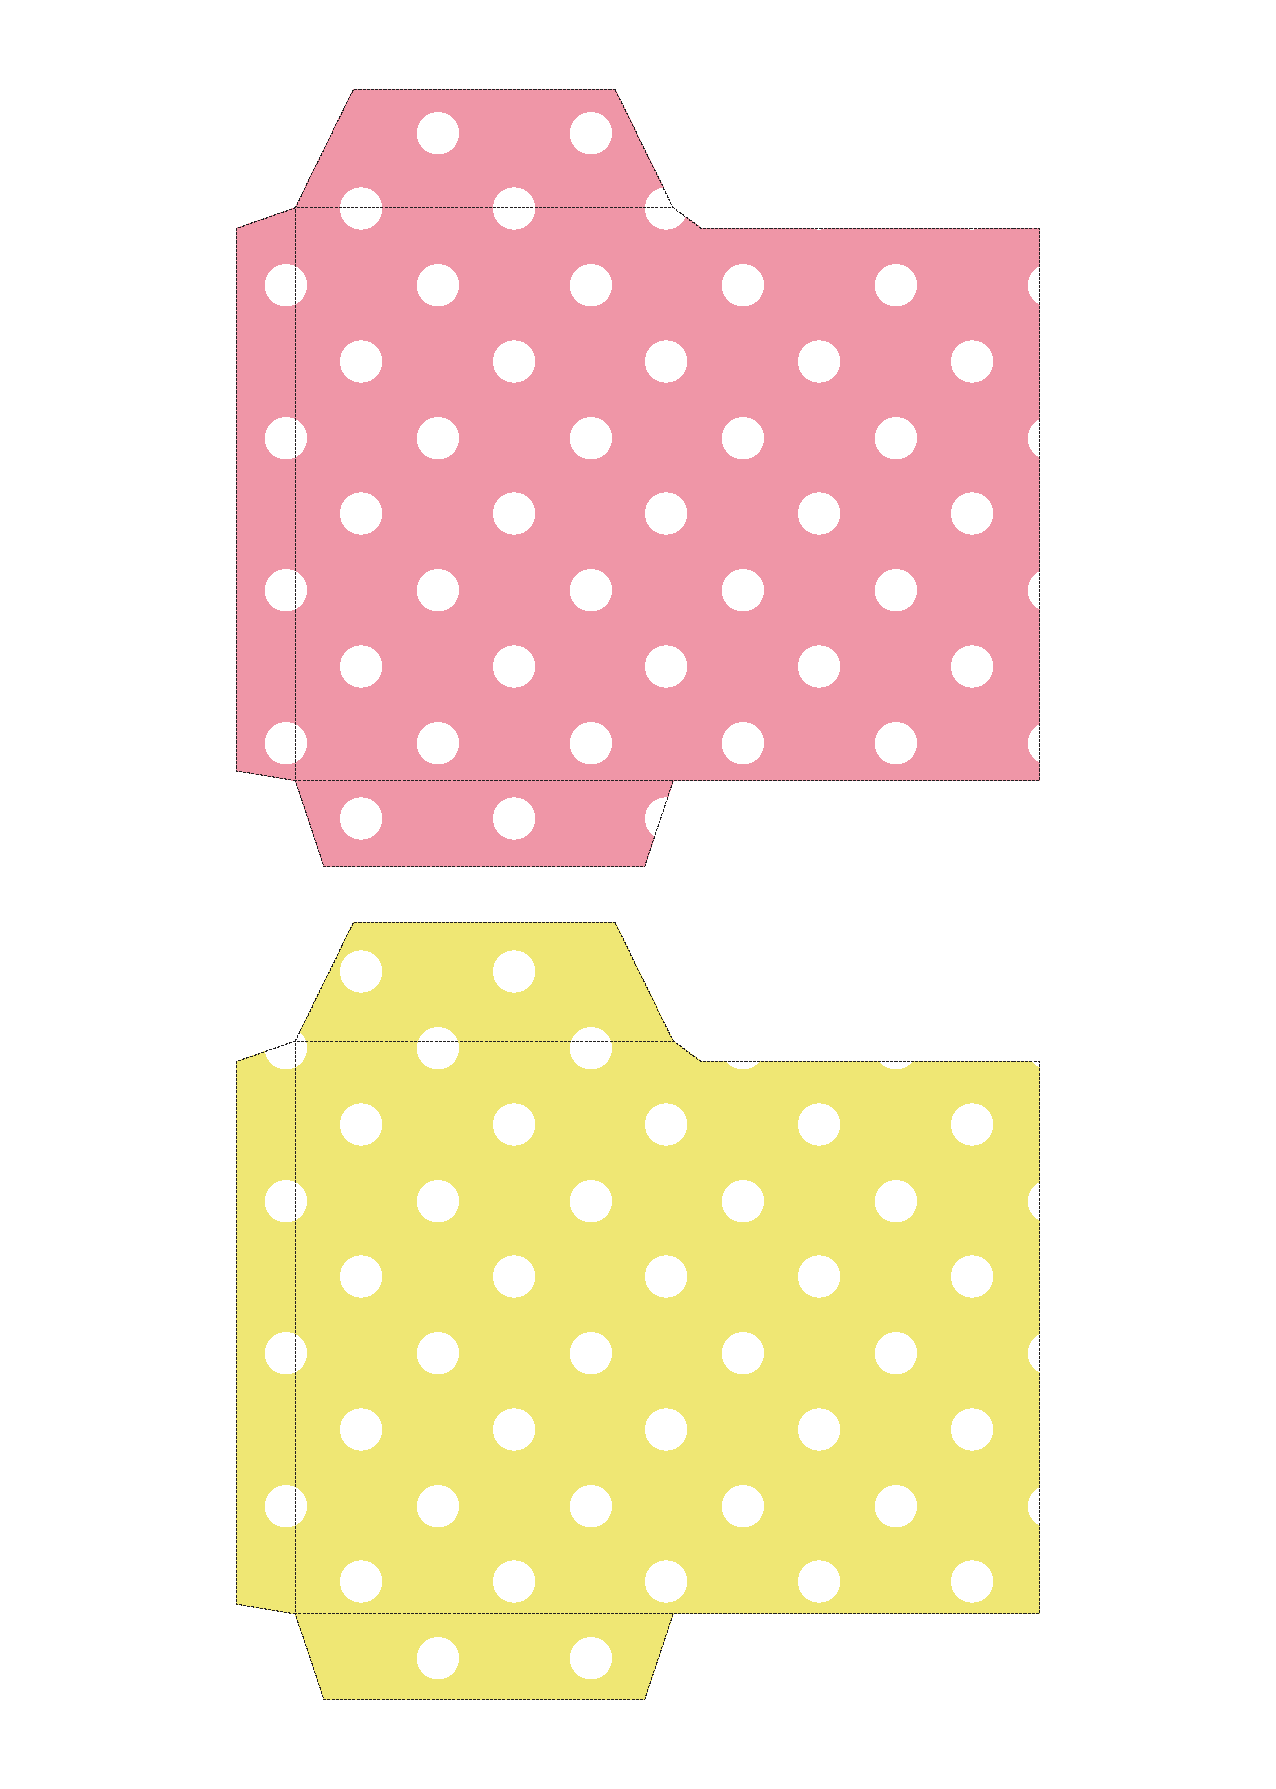 ポチ袋 お年玉袋 のテンプレート 水玉 ピンク 黄色 イラスト